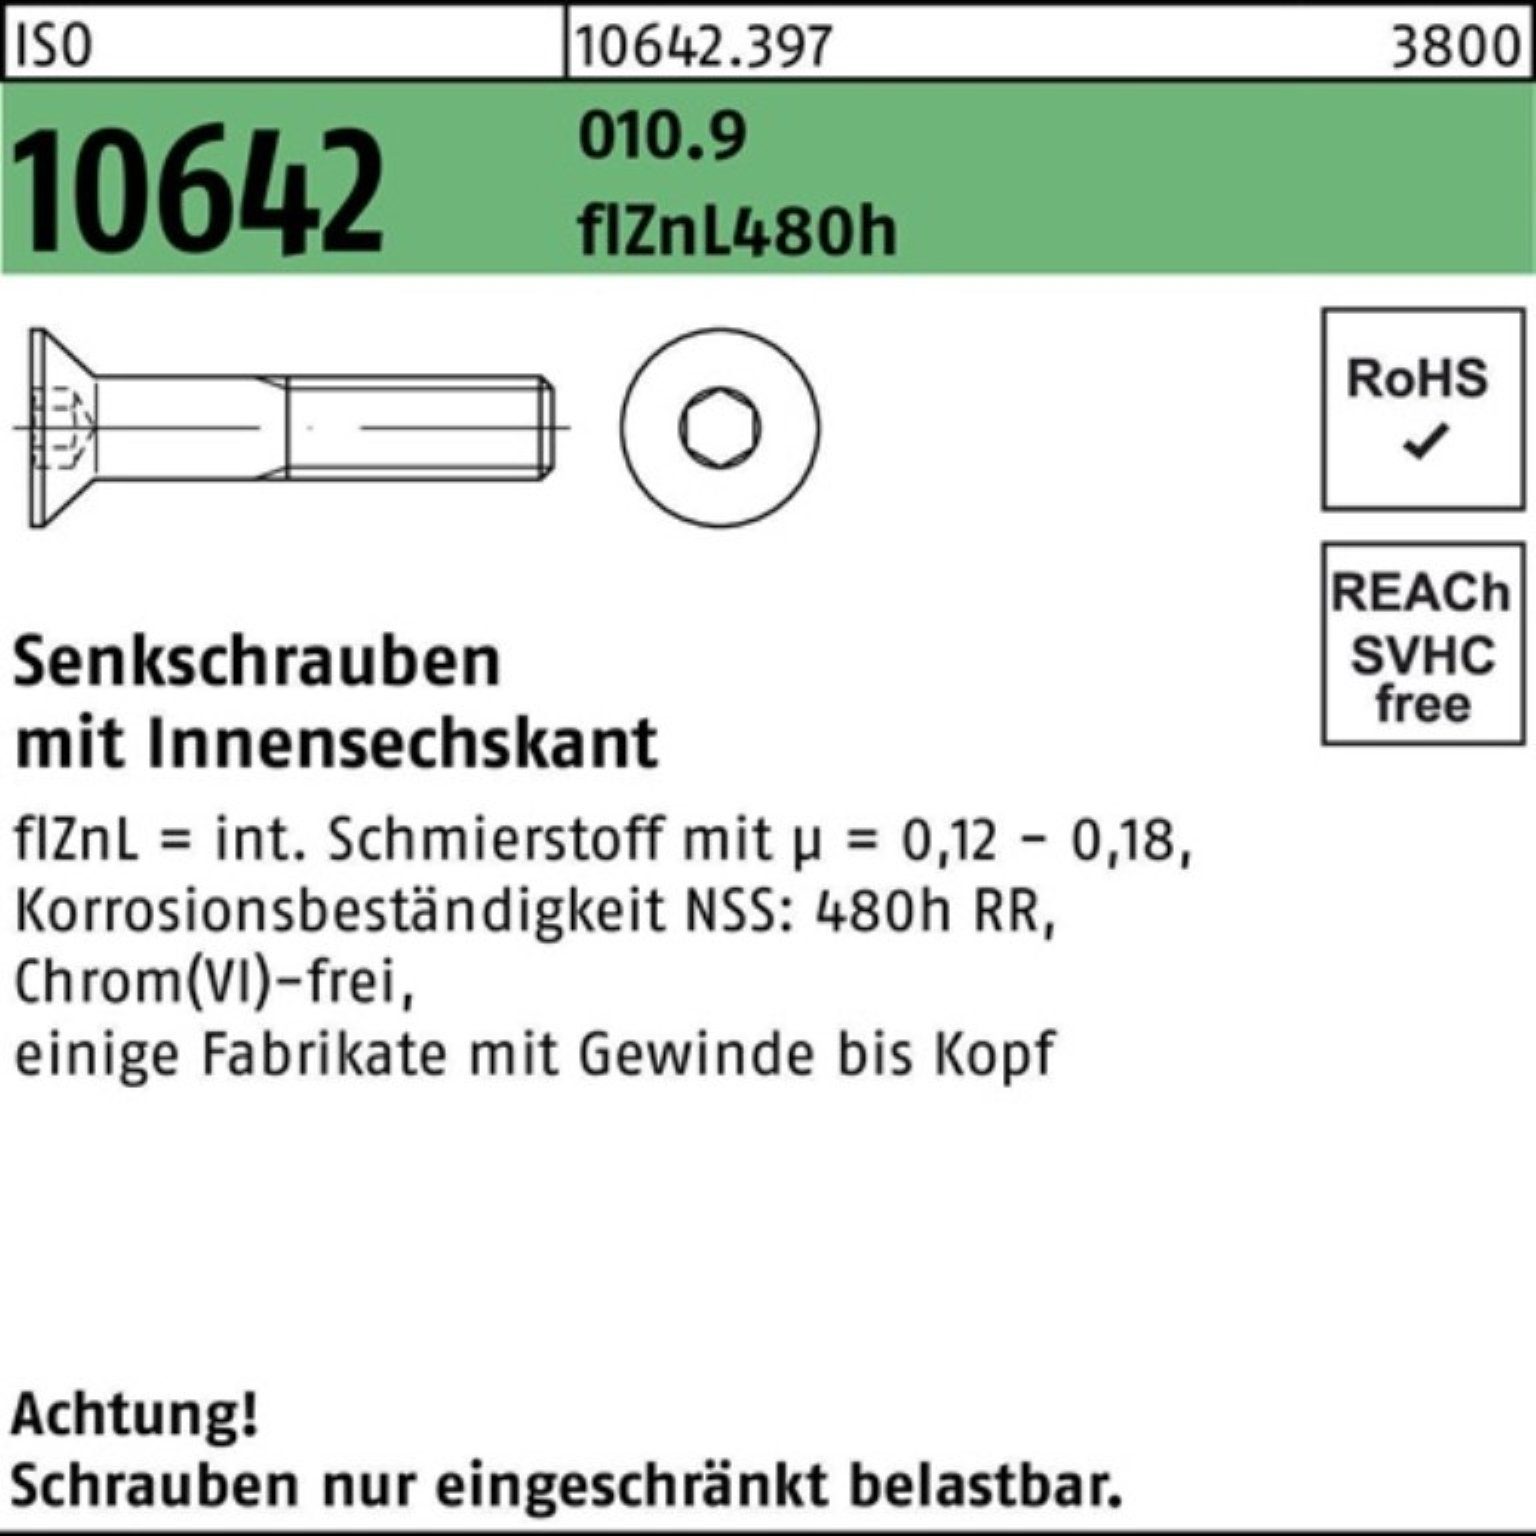 Reyher Senkschraube 480h flZnL Pack 010.9 ISO zi 100er 10642 Innen-6kt Senkschraube M16x35